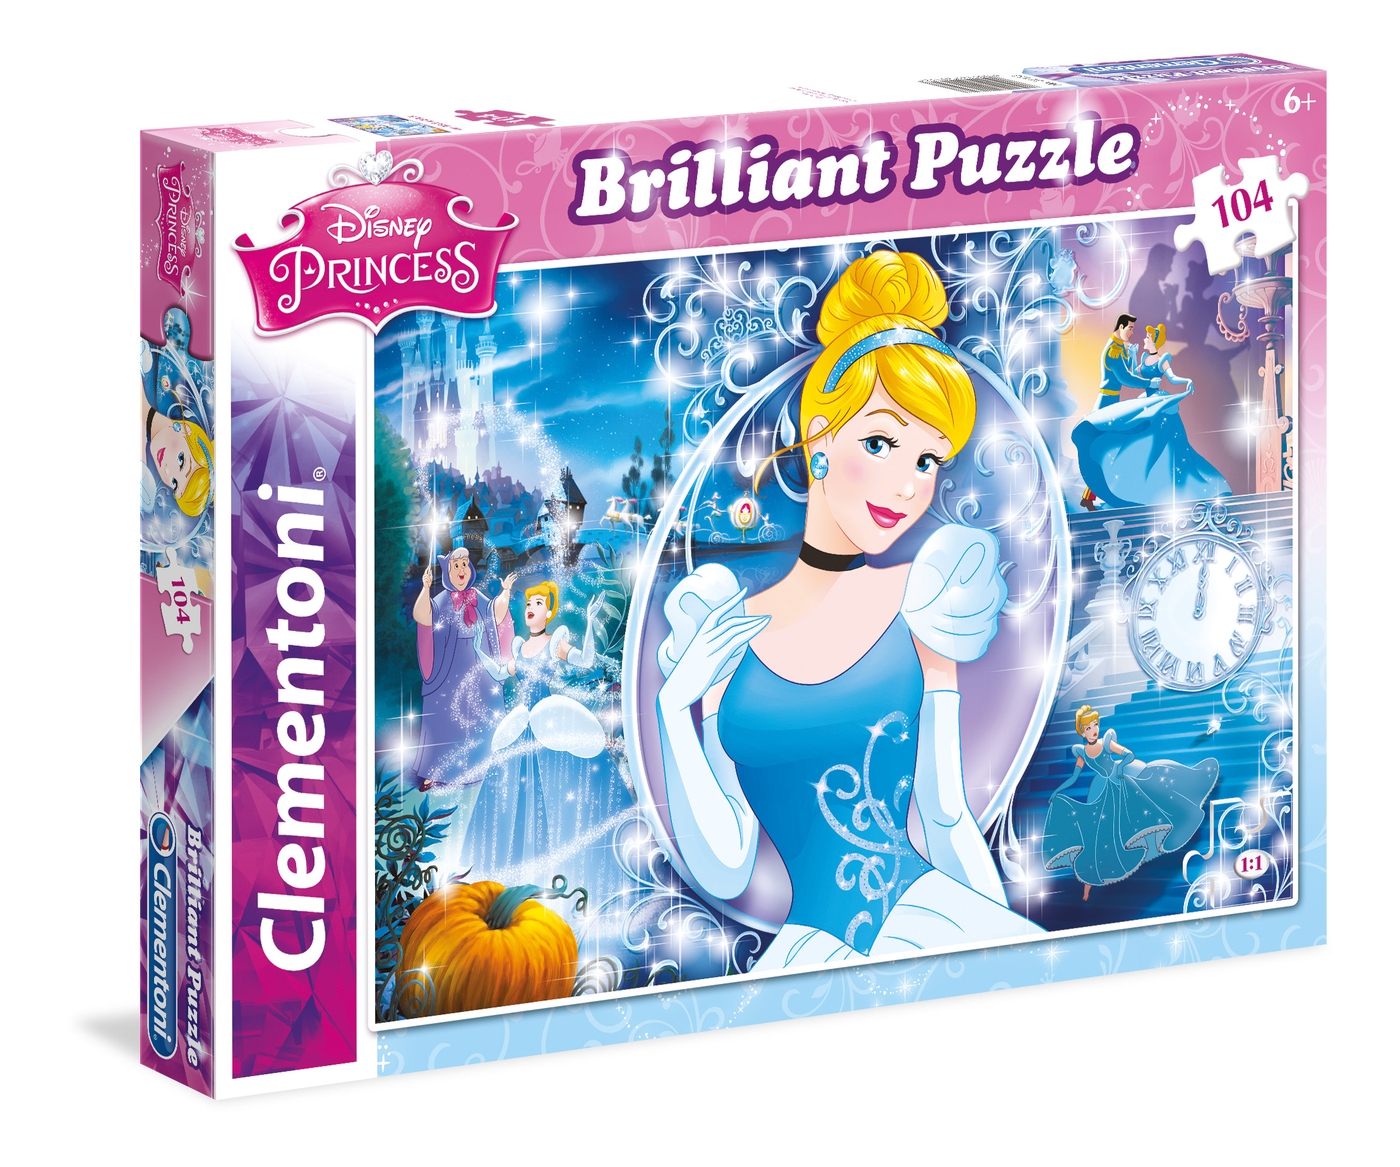 Disney Princess Brillant Puzzle 104 Teile Kinderpuzzle Clementoni 20140.2 